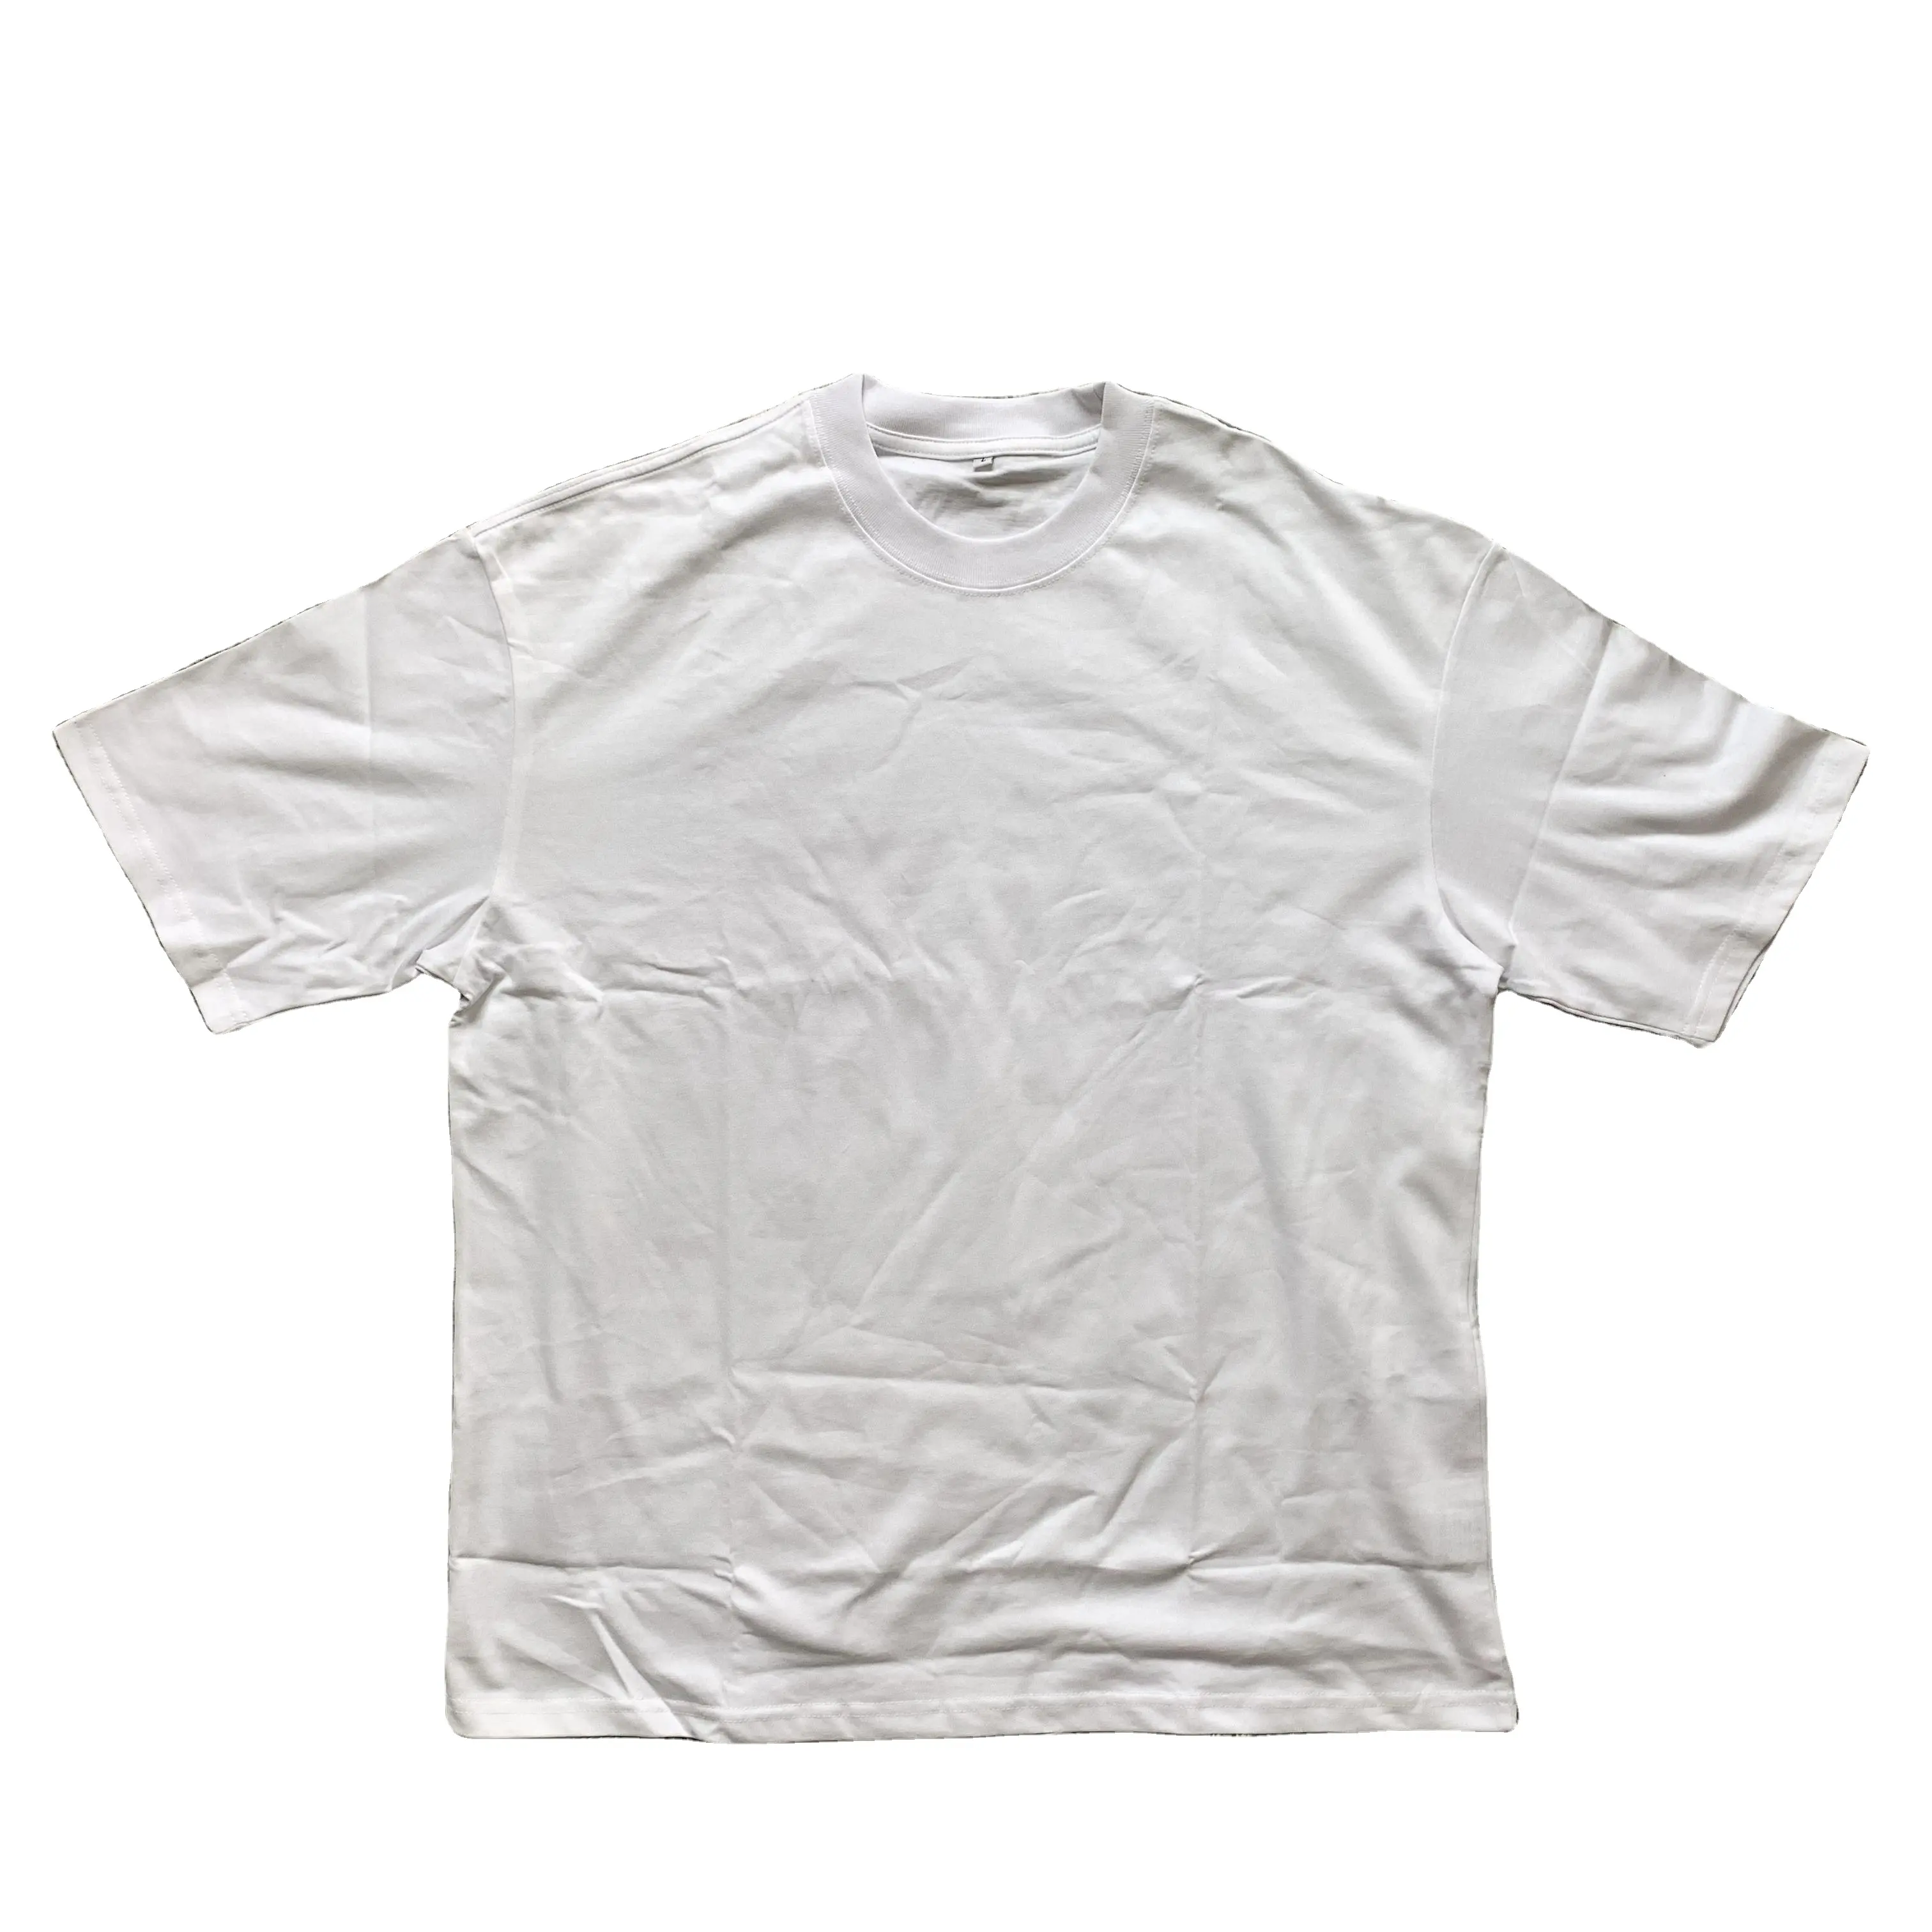 हिप हॉप पेशी फिट घुमावदार हेम सफेद सूती लोगो पुरुषों टी शर्ट आकस्मिक मात्रा प्रवृत्ति XXL मोटी कपड़े oversized पुरुषों टी शर्ट